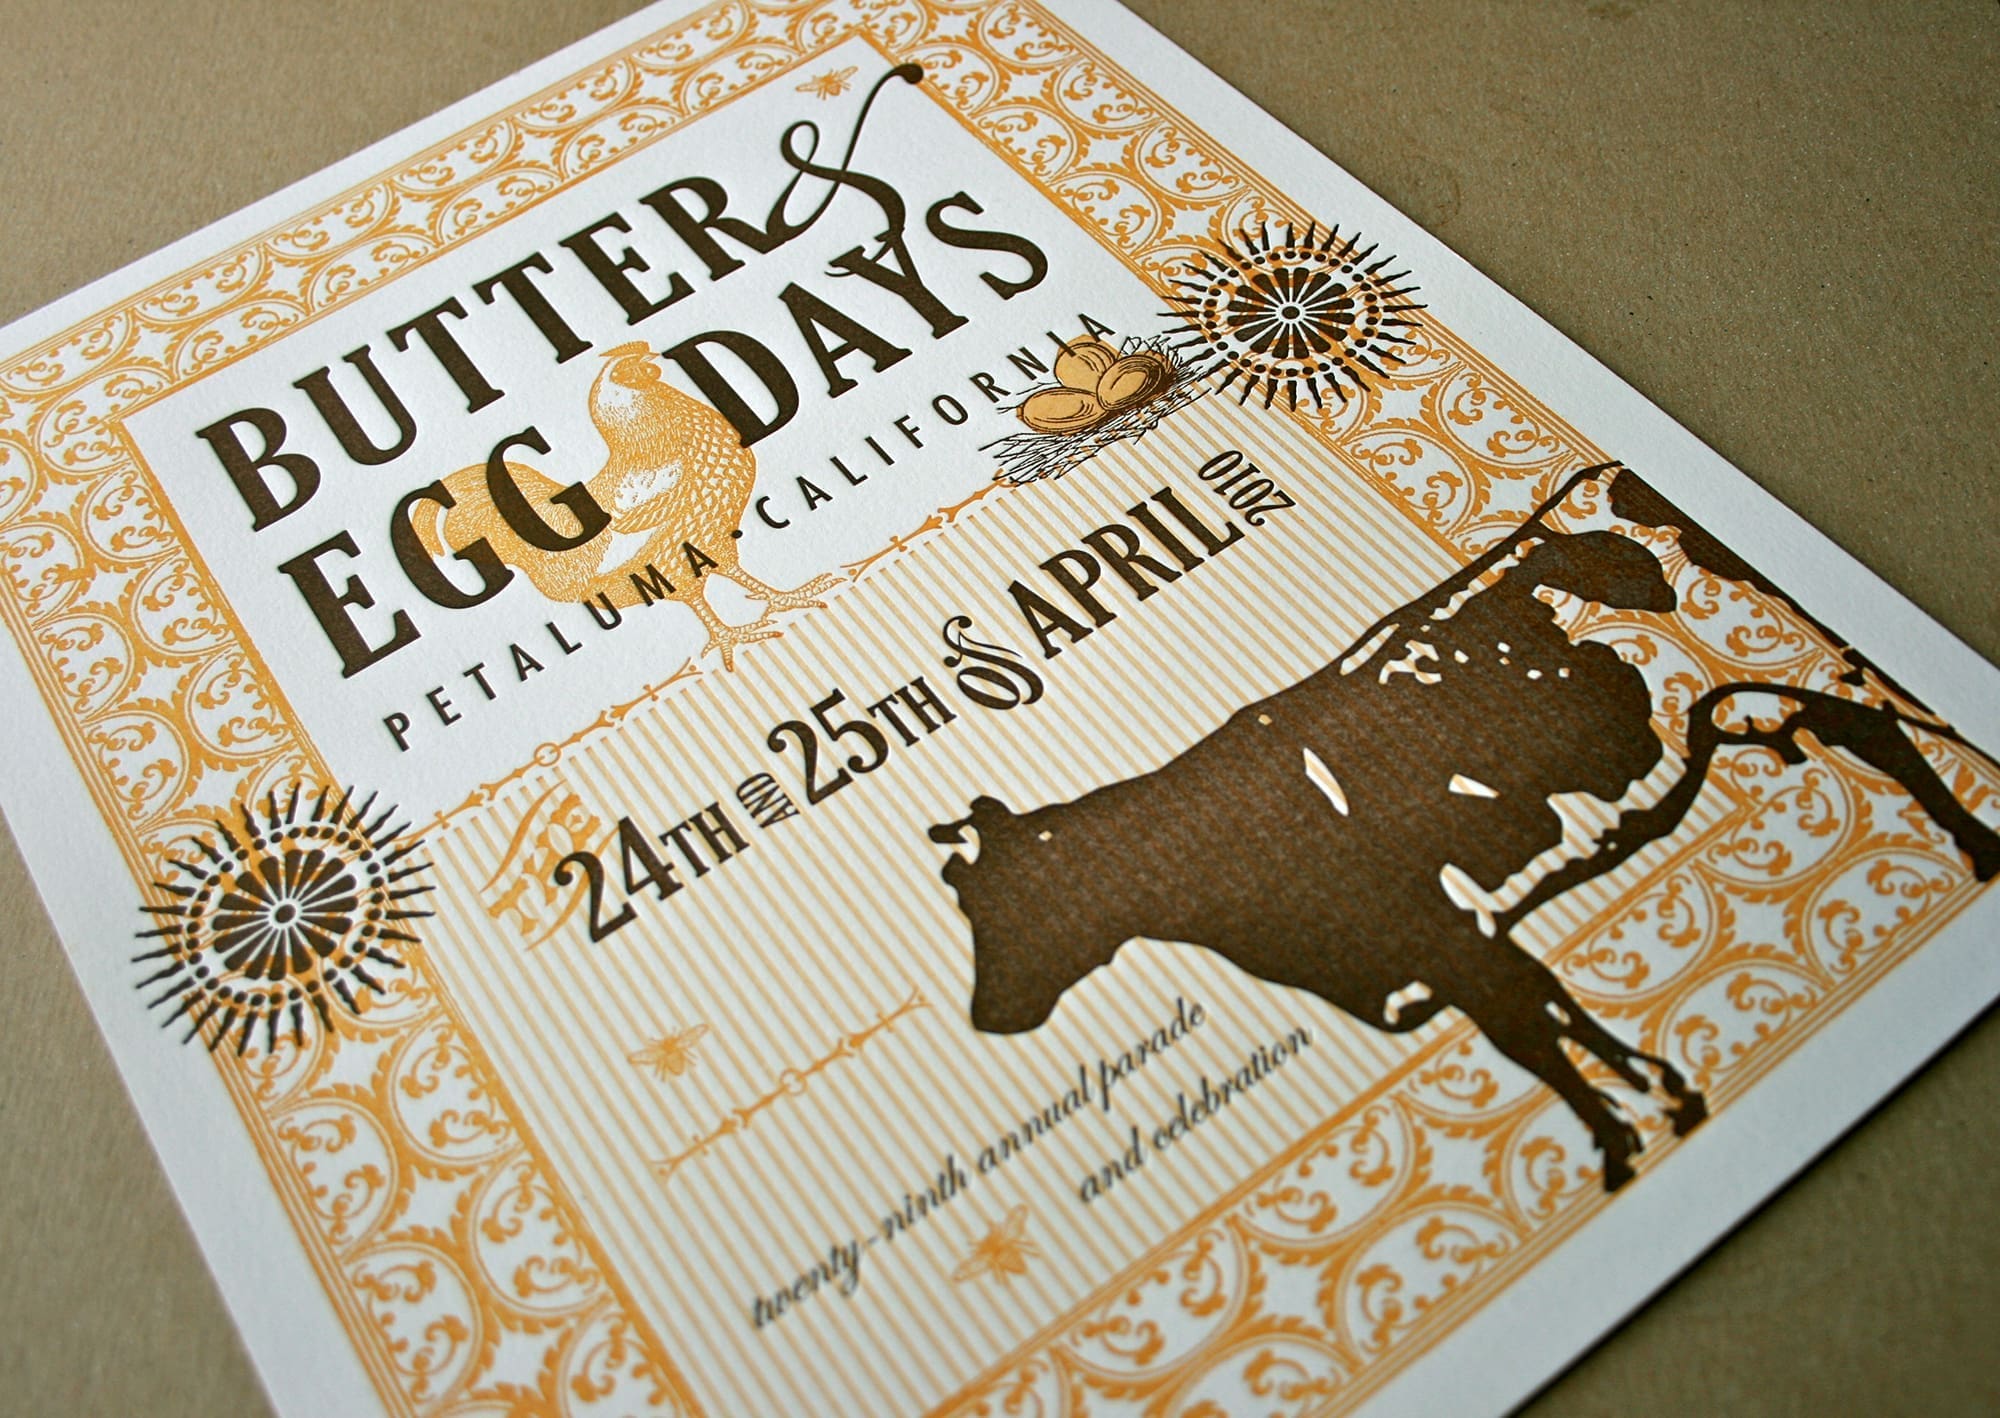 Petaluma Butter & Egg Days 2010 limited edition poster